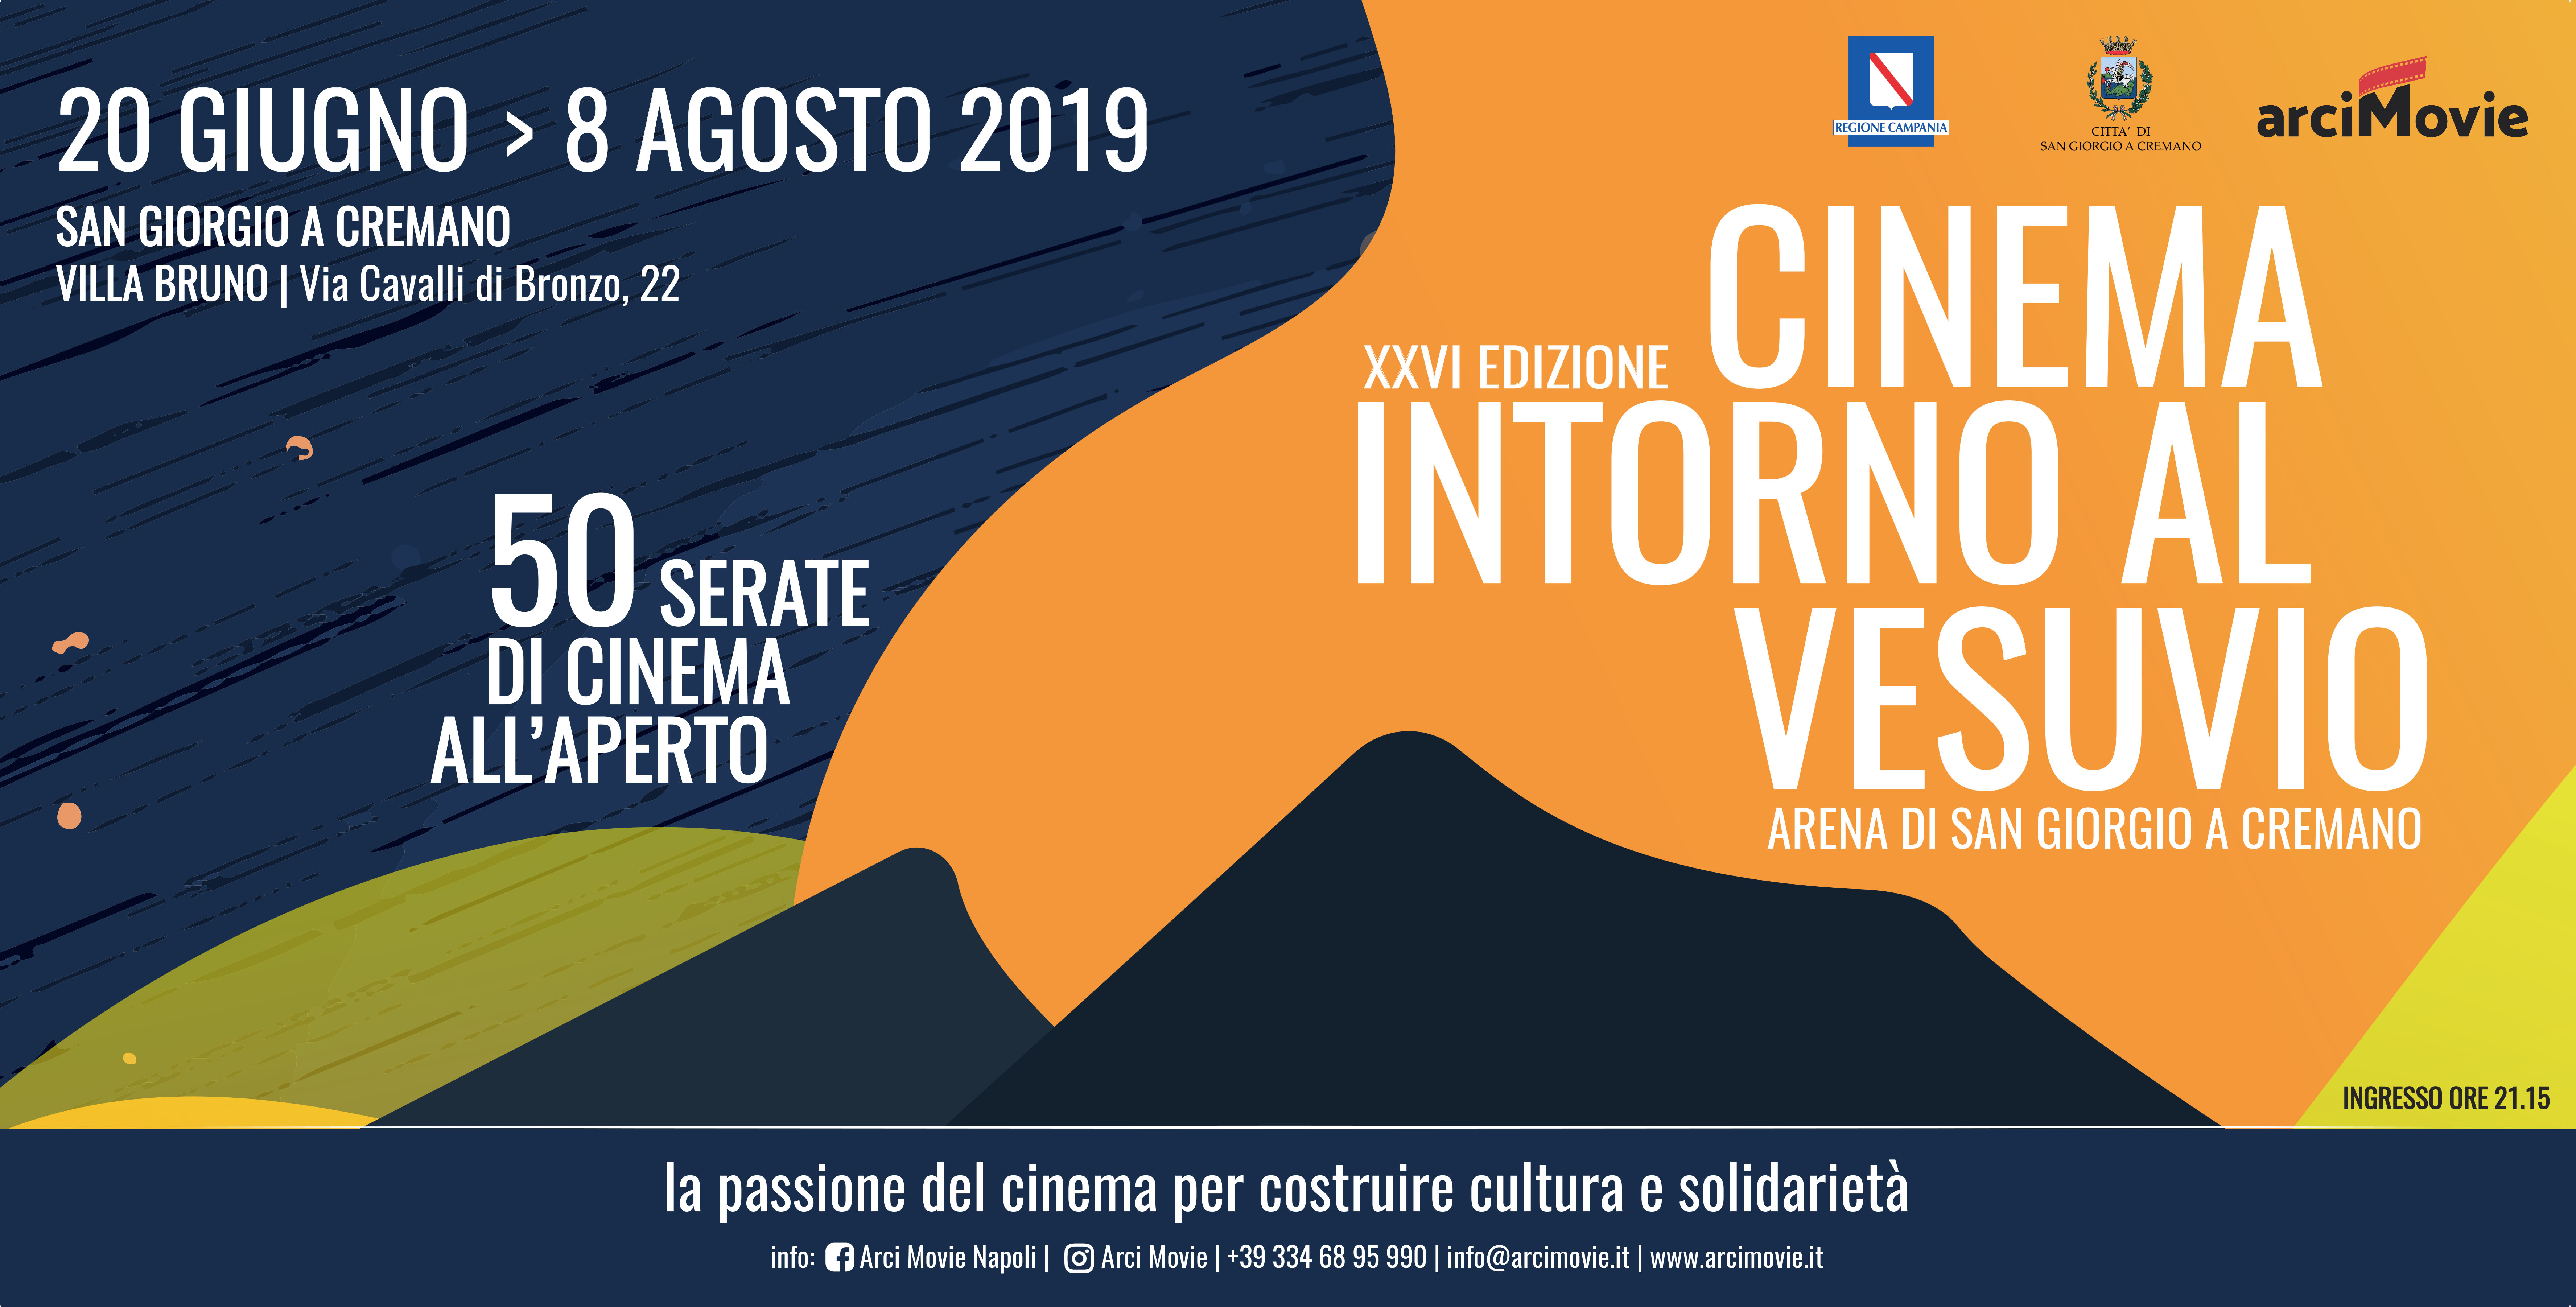 Al via la XXVI edizione di “Cinema intorno al Vesuvio”